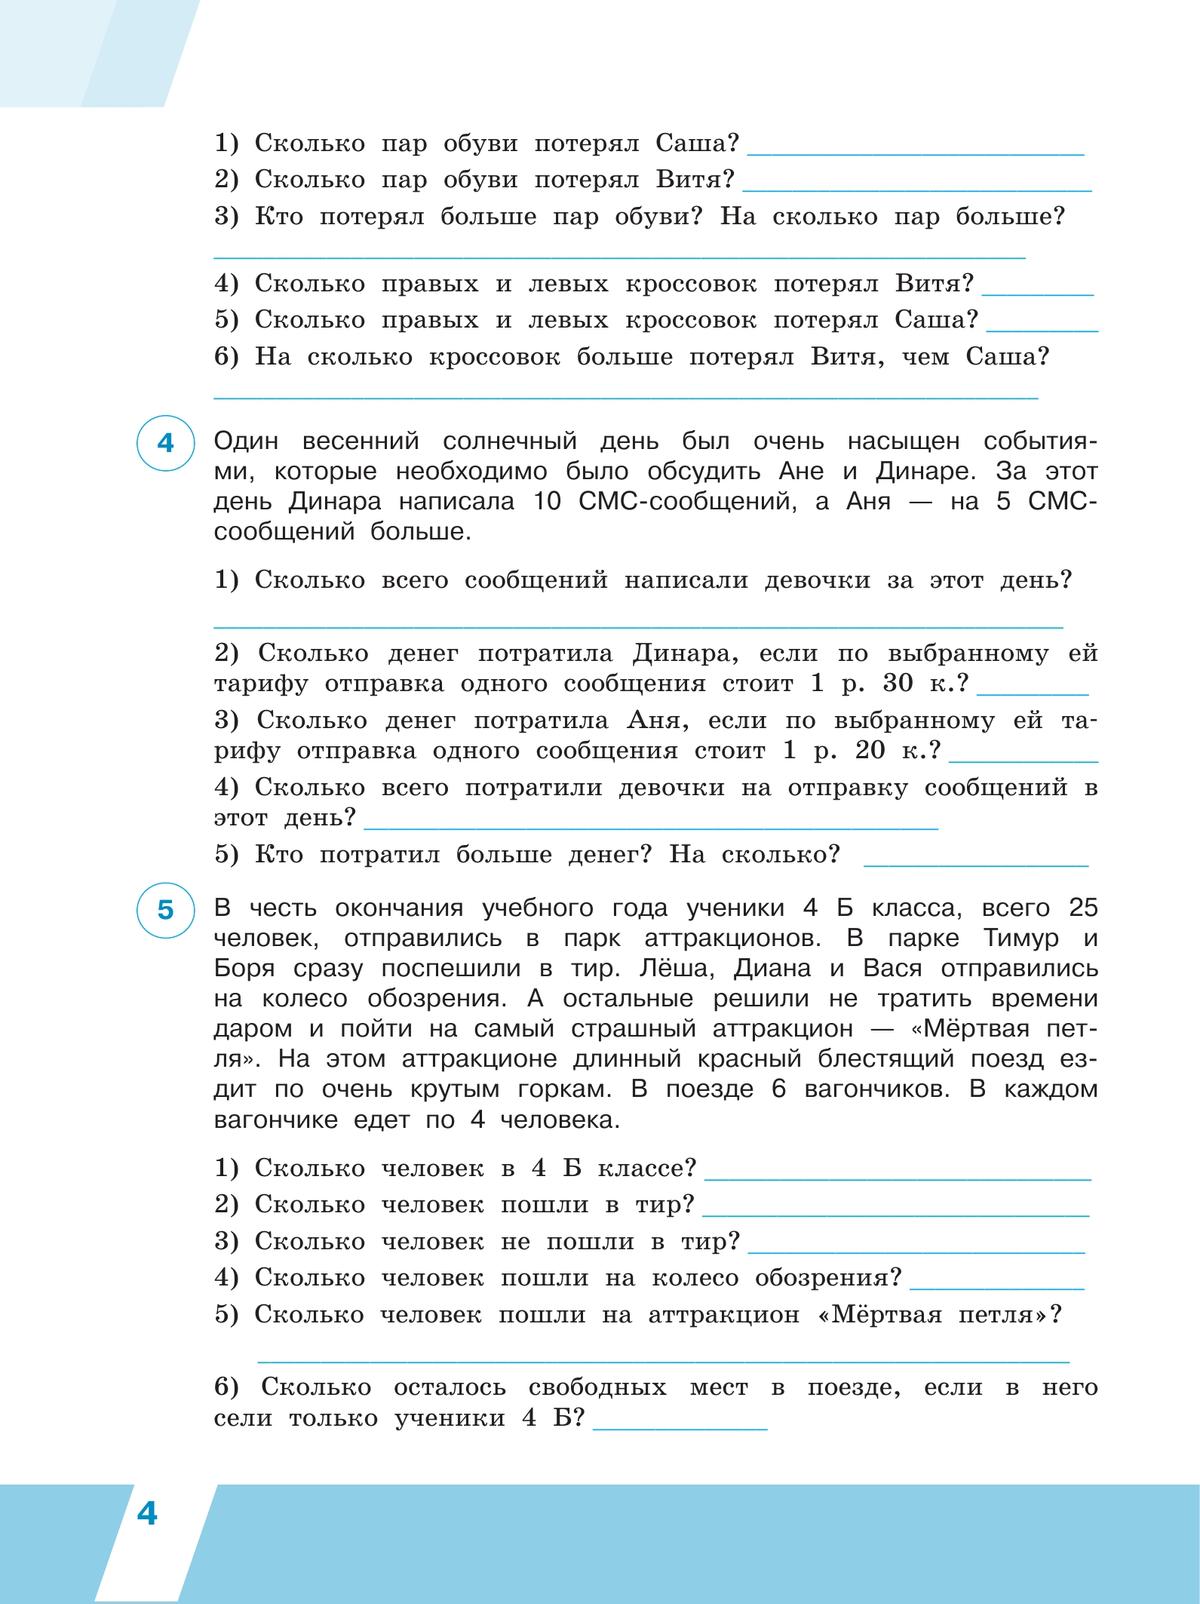 Всероссийские проверочные работы. Математика. Рабочая тетрадь. 4 класс. В 2 частях. Часть 2 7